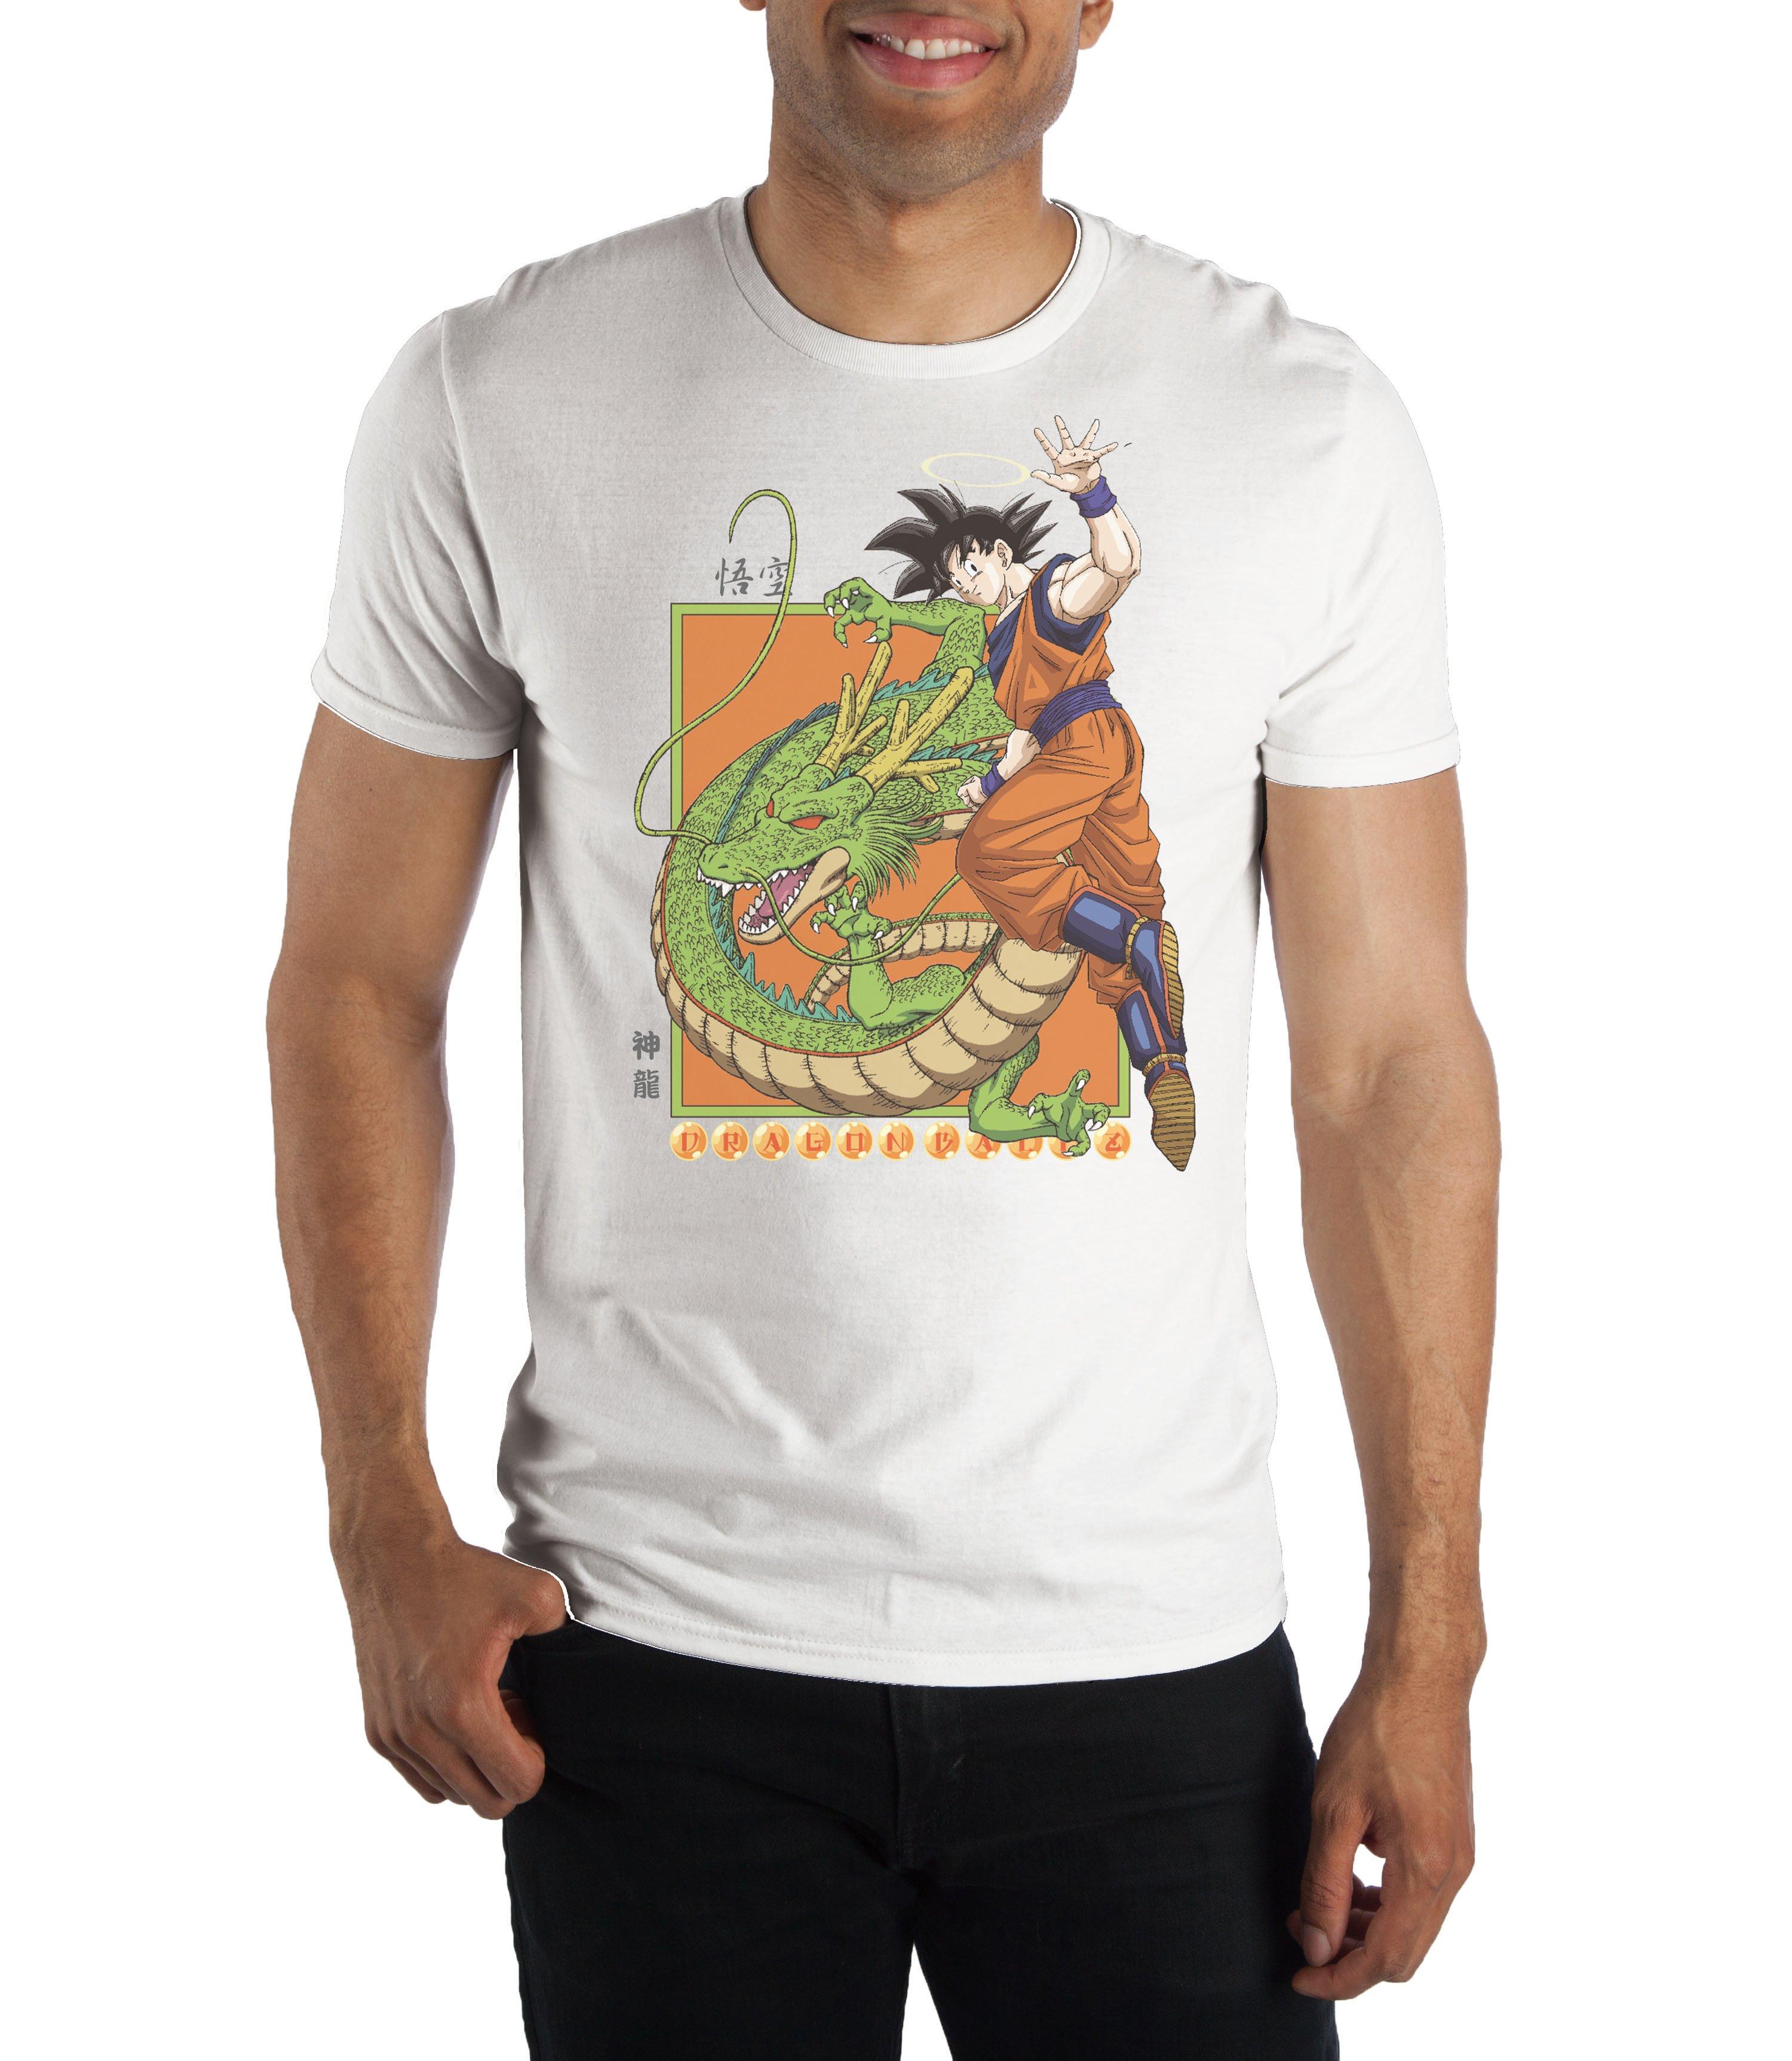 Dragon Ball Z Goku T Shirt Gamestop